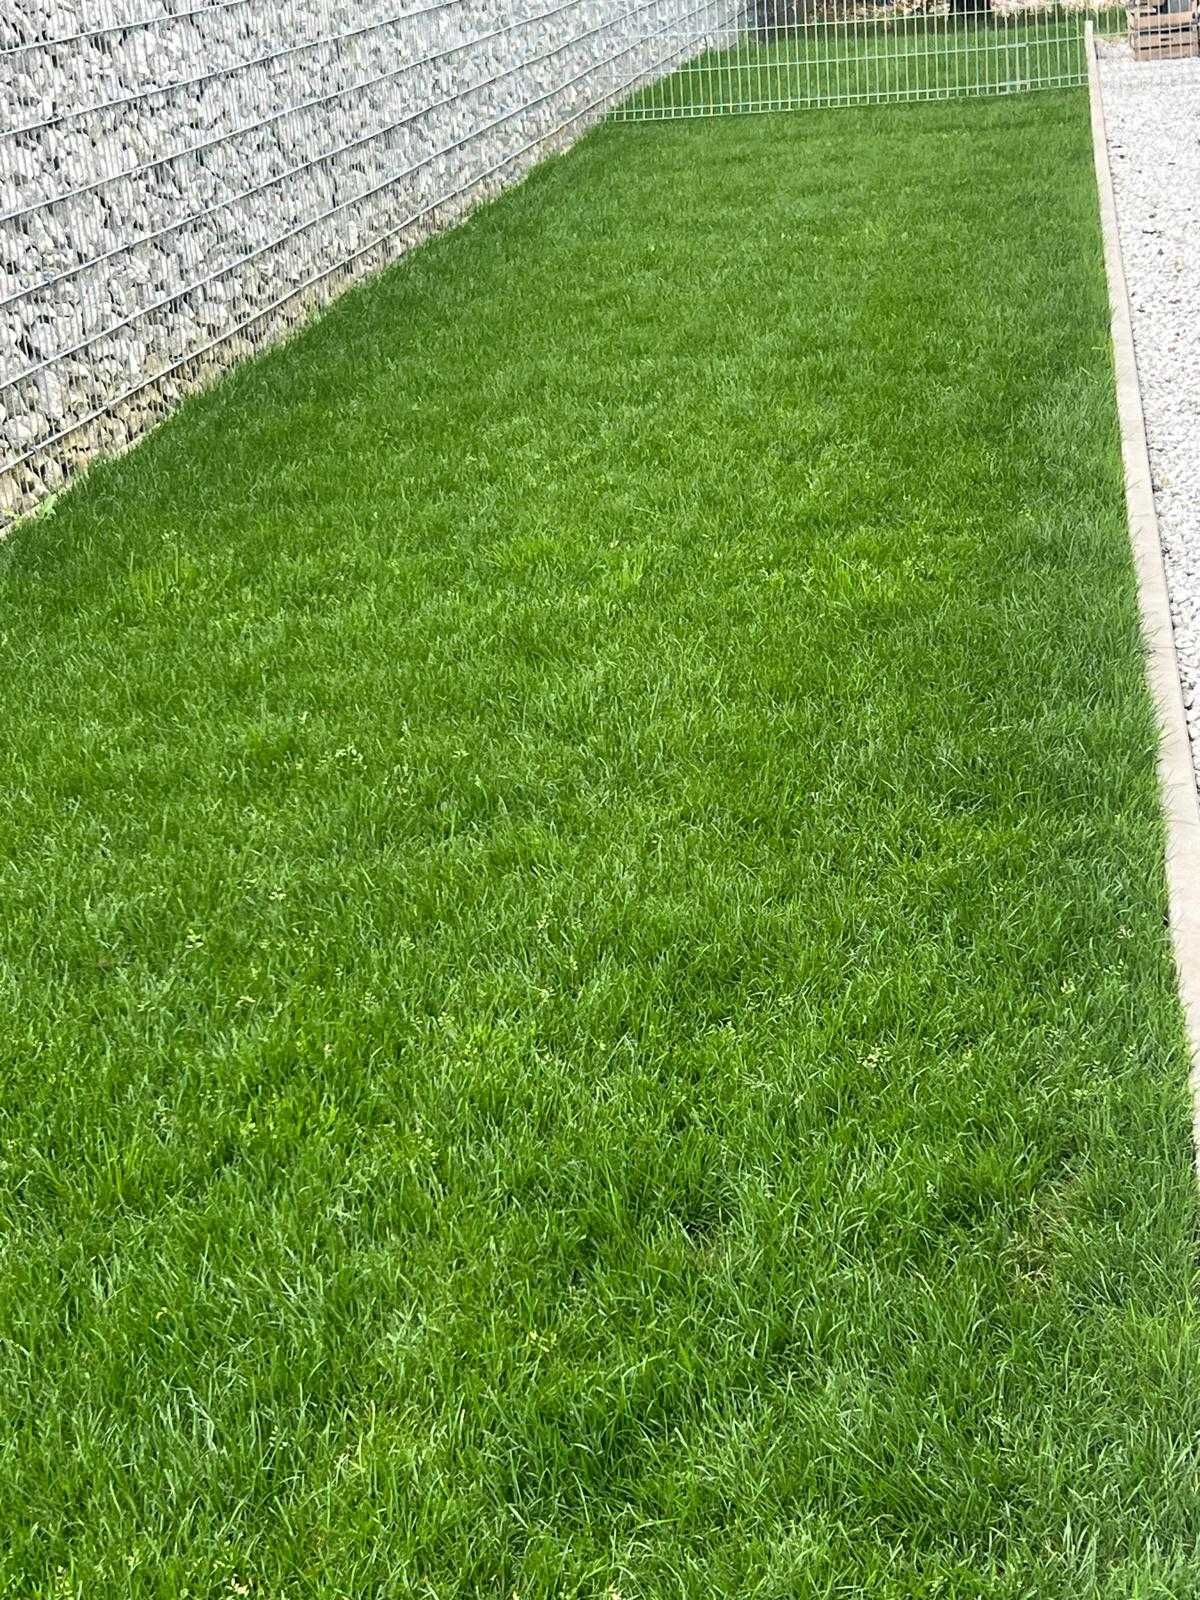 Piękny trawnik w jeden dzień - trawa w rolce